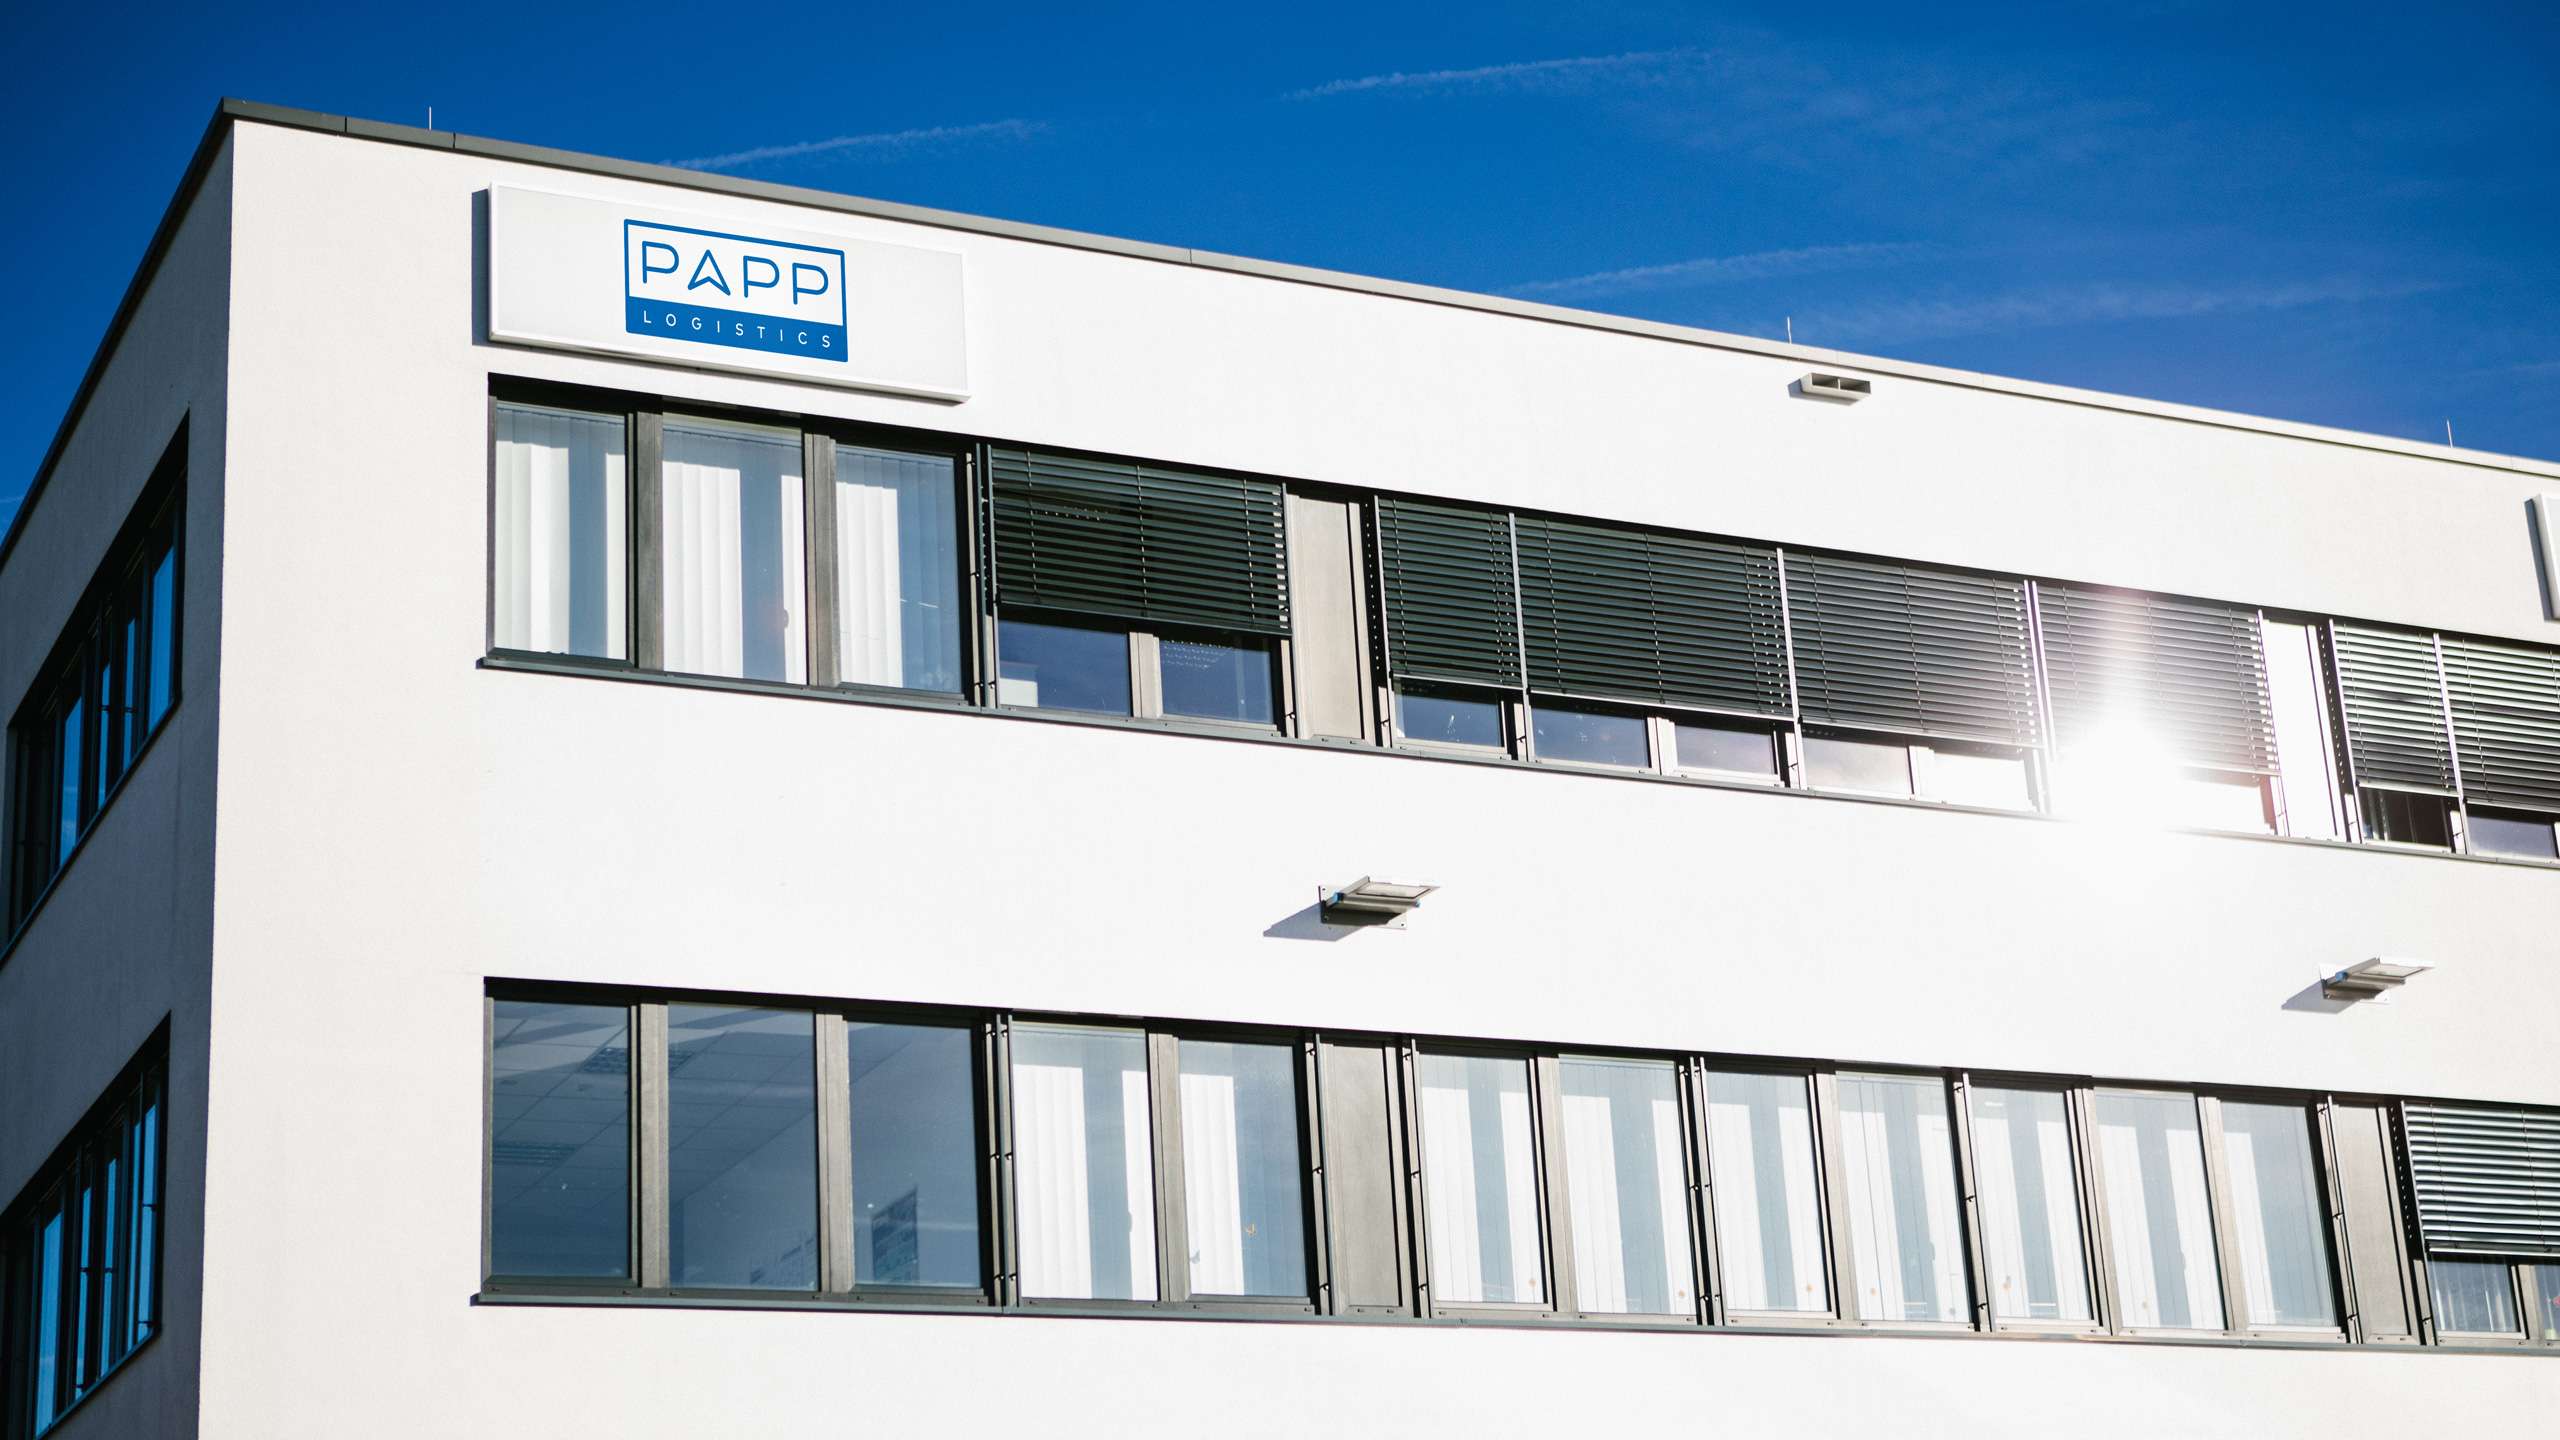 Ein weißes Gebäude vor einem blauen, wolkenlosen Himmel. Am oberen linken Eck steht das PAPP-Logo. Zwei Fensterreihen werden von der Sonne beschienen.